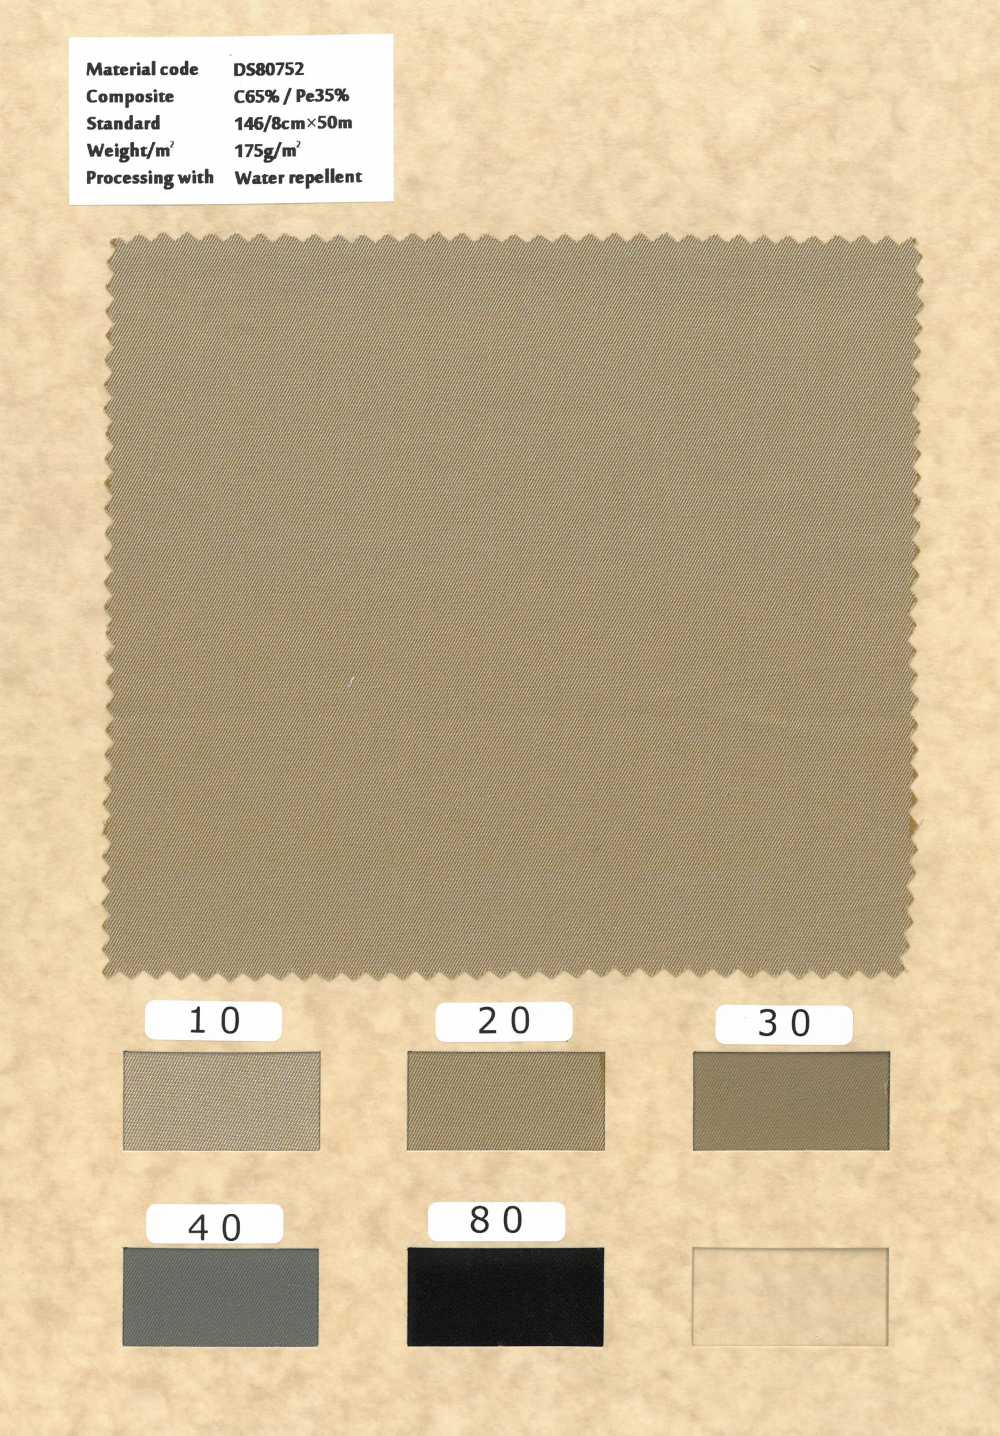 DS80752 Sợi Bông Polyester được Nhuộm Gabardine Hoàn Thiện Chống Thấm Nước[Vải] Styletex